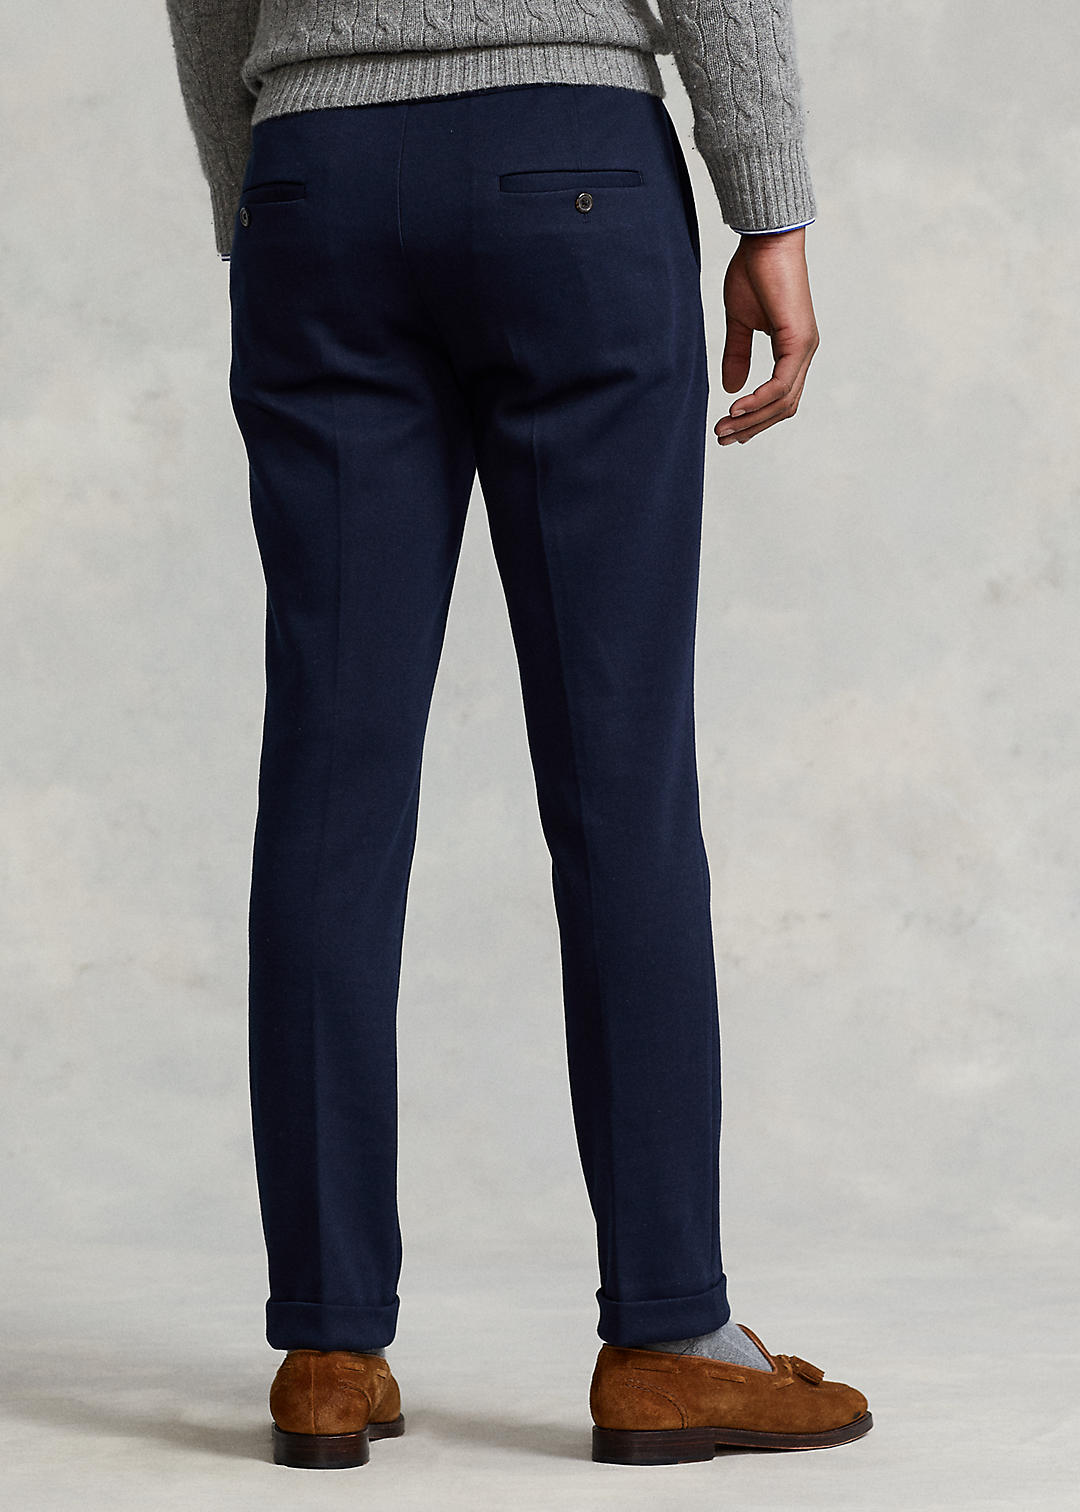 Polo Ralph Lauren Double-Knit Suit Trouser 4